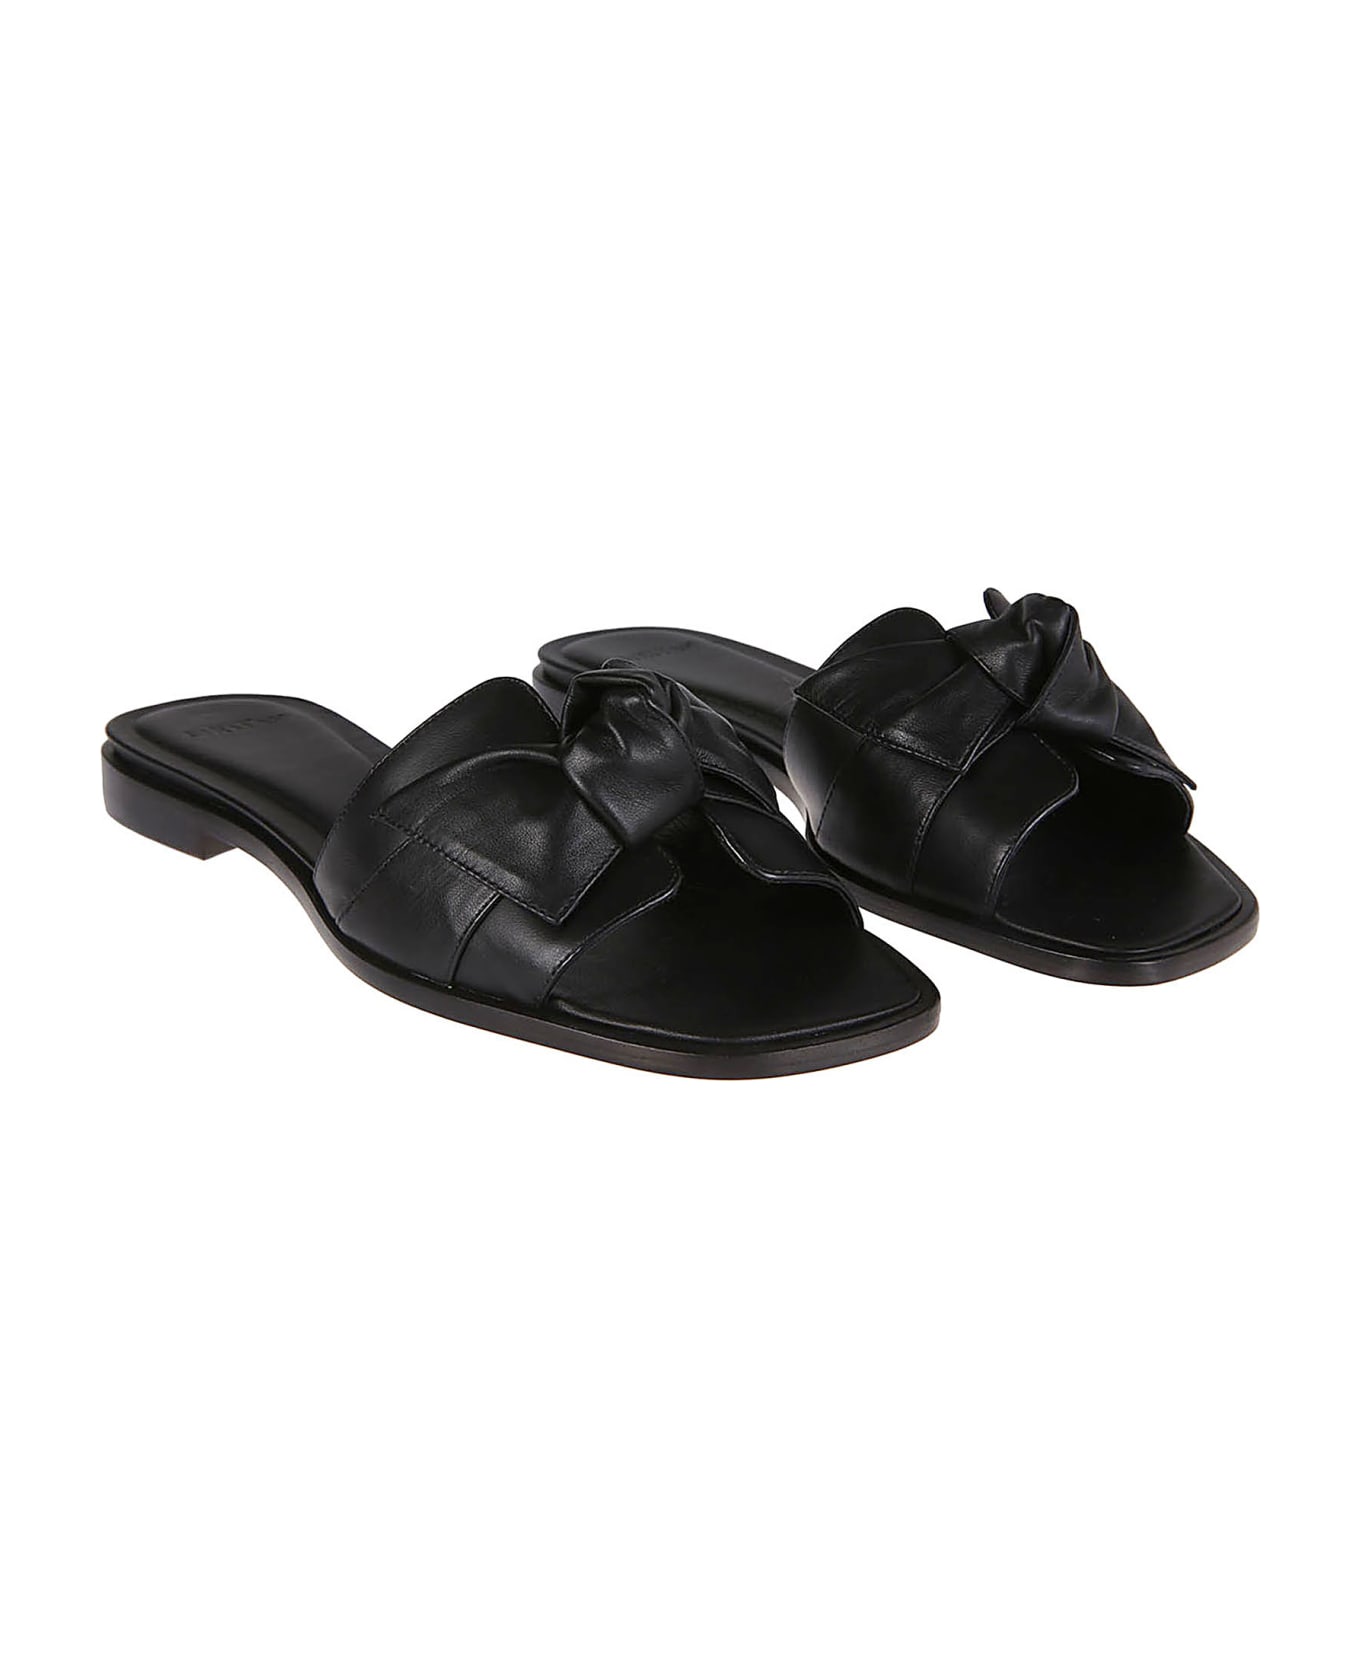 Alexandre Birman Maxi Clarita Square Flat Sandals - Black